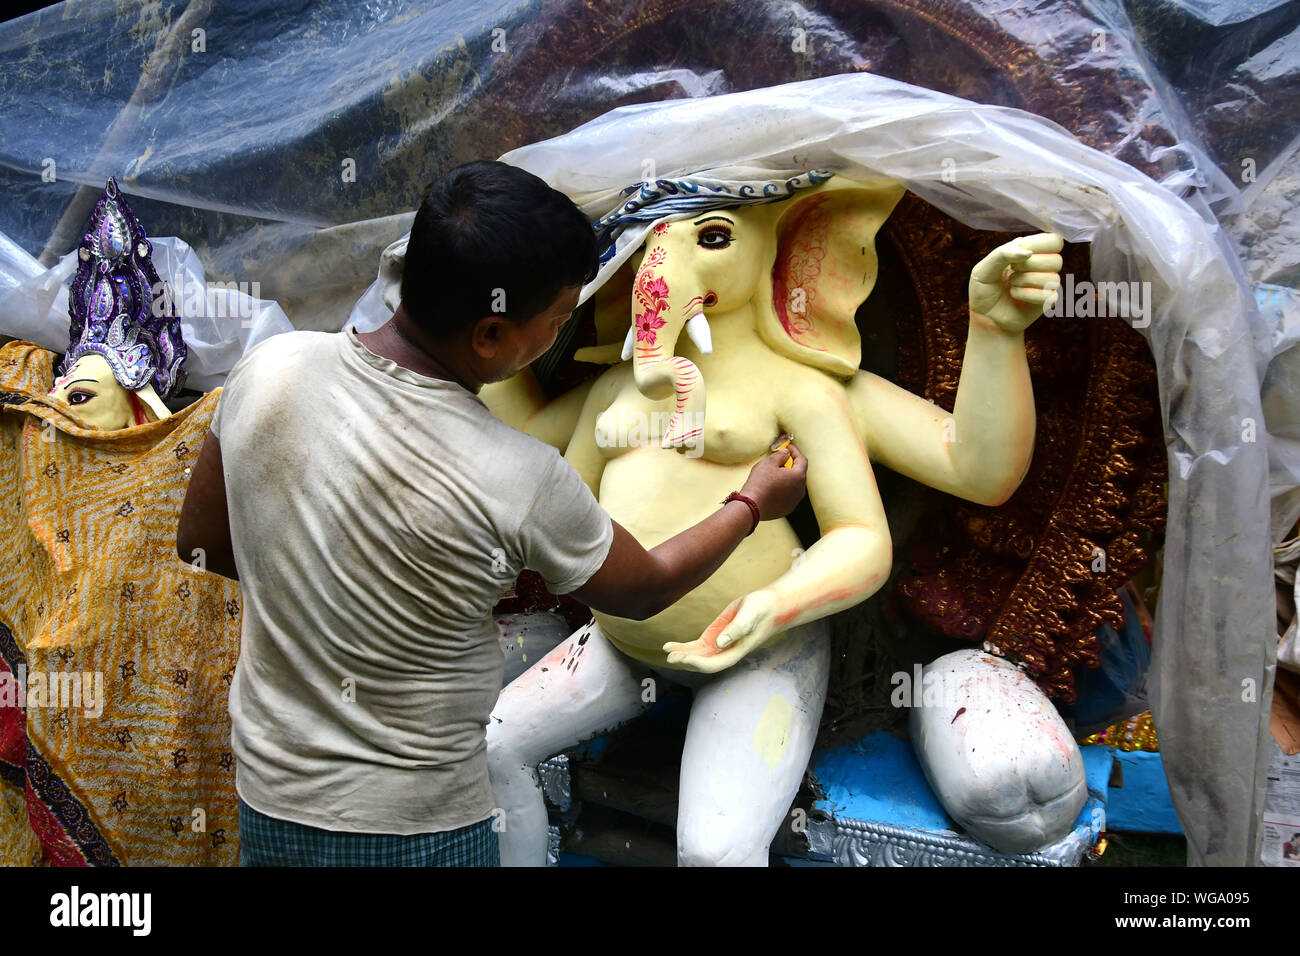 Idol of Lord Ganesha . Artisans of kumortuli , kolkata makes thousands of lord ganesha clay idols every year. Stock Photo